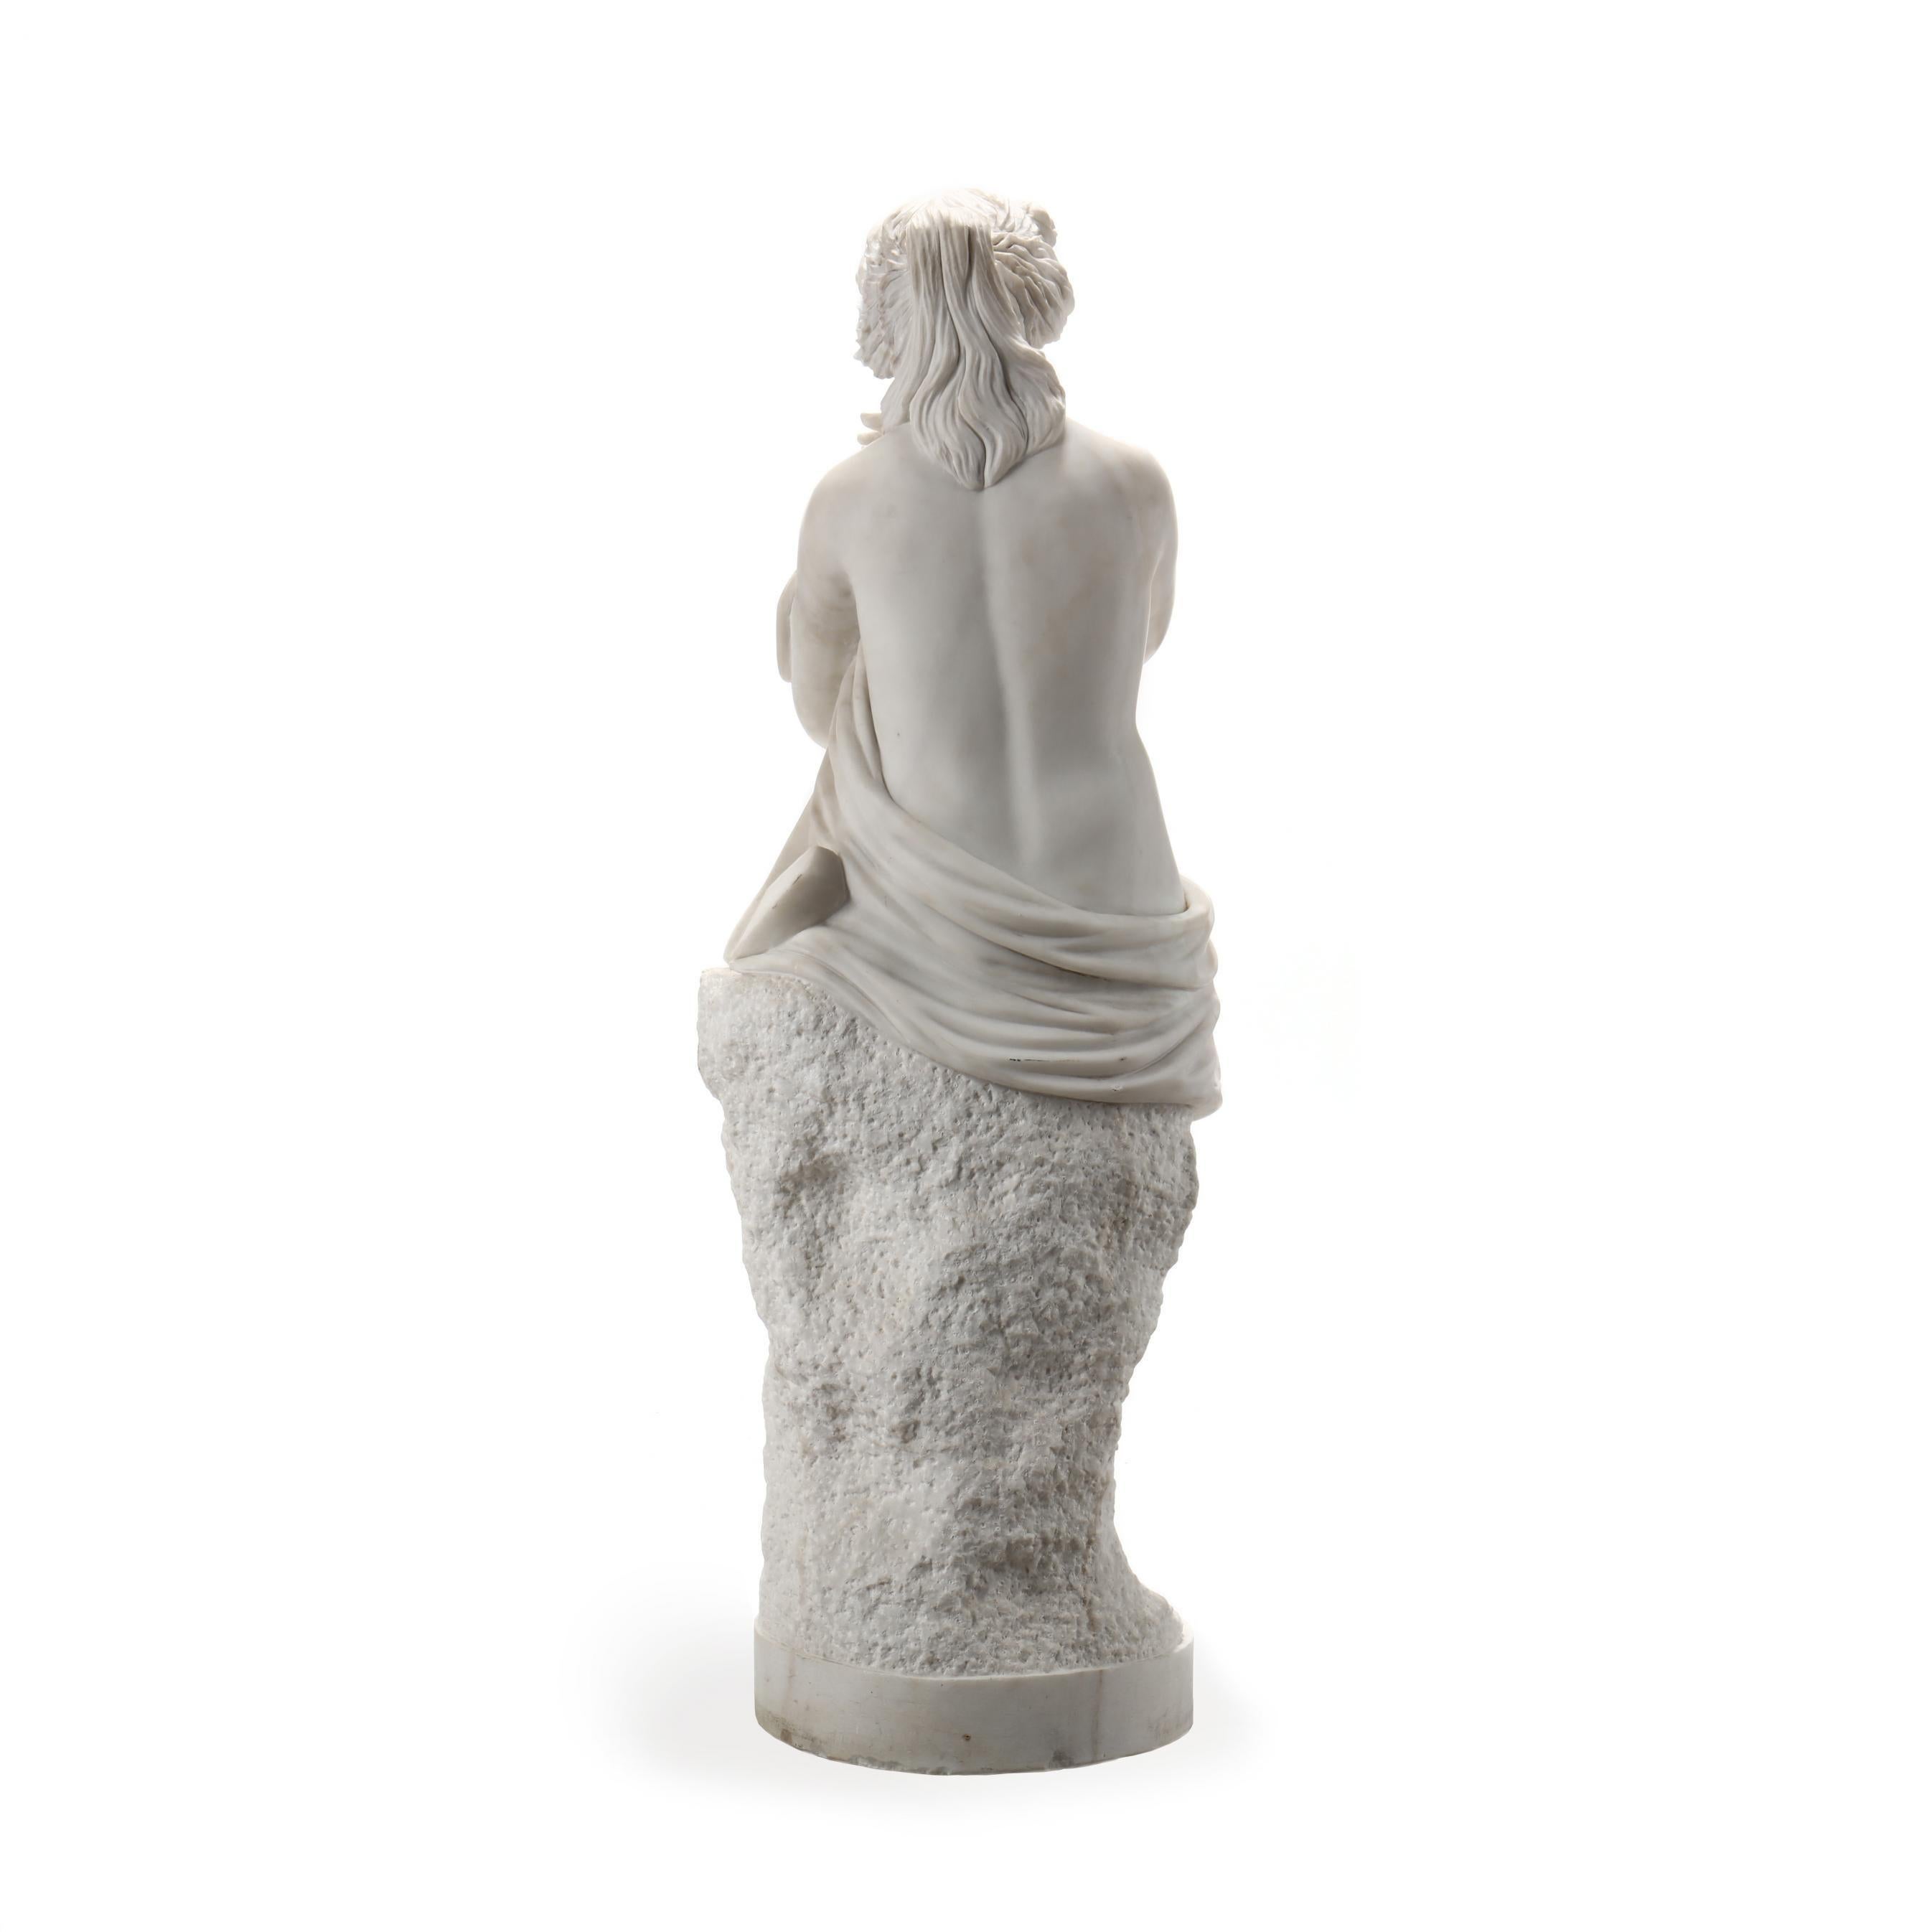 Lebensgroße allegorische Skulptur der Hoffnung aus geschnitztem Marmor

um 1900, unsigniert, die Frau trägt ein römisches Gewand und ist auf einem Felsvorsprung mit einem Anker an ihrer Seite dargestellt, Rosen schmücken ihr Haar. 
60 in.